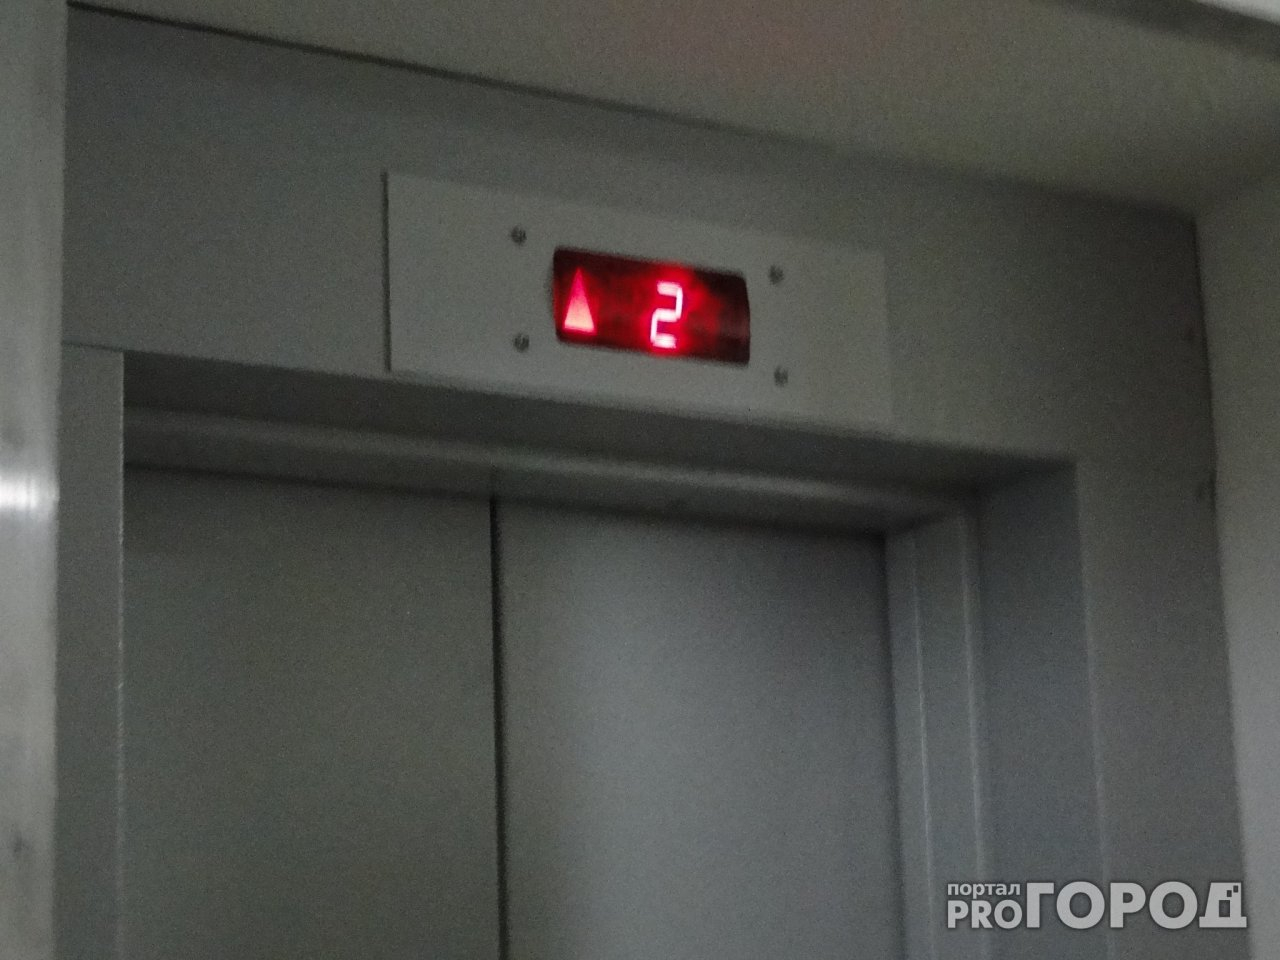 "Мы боимся, что до Нового года будем подниматься на 9-й этаж пешком" - жители дома на улице Зубковой обеспокоены отключением лифтов